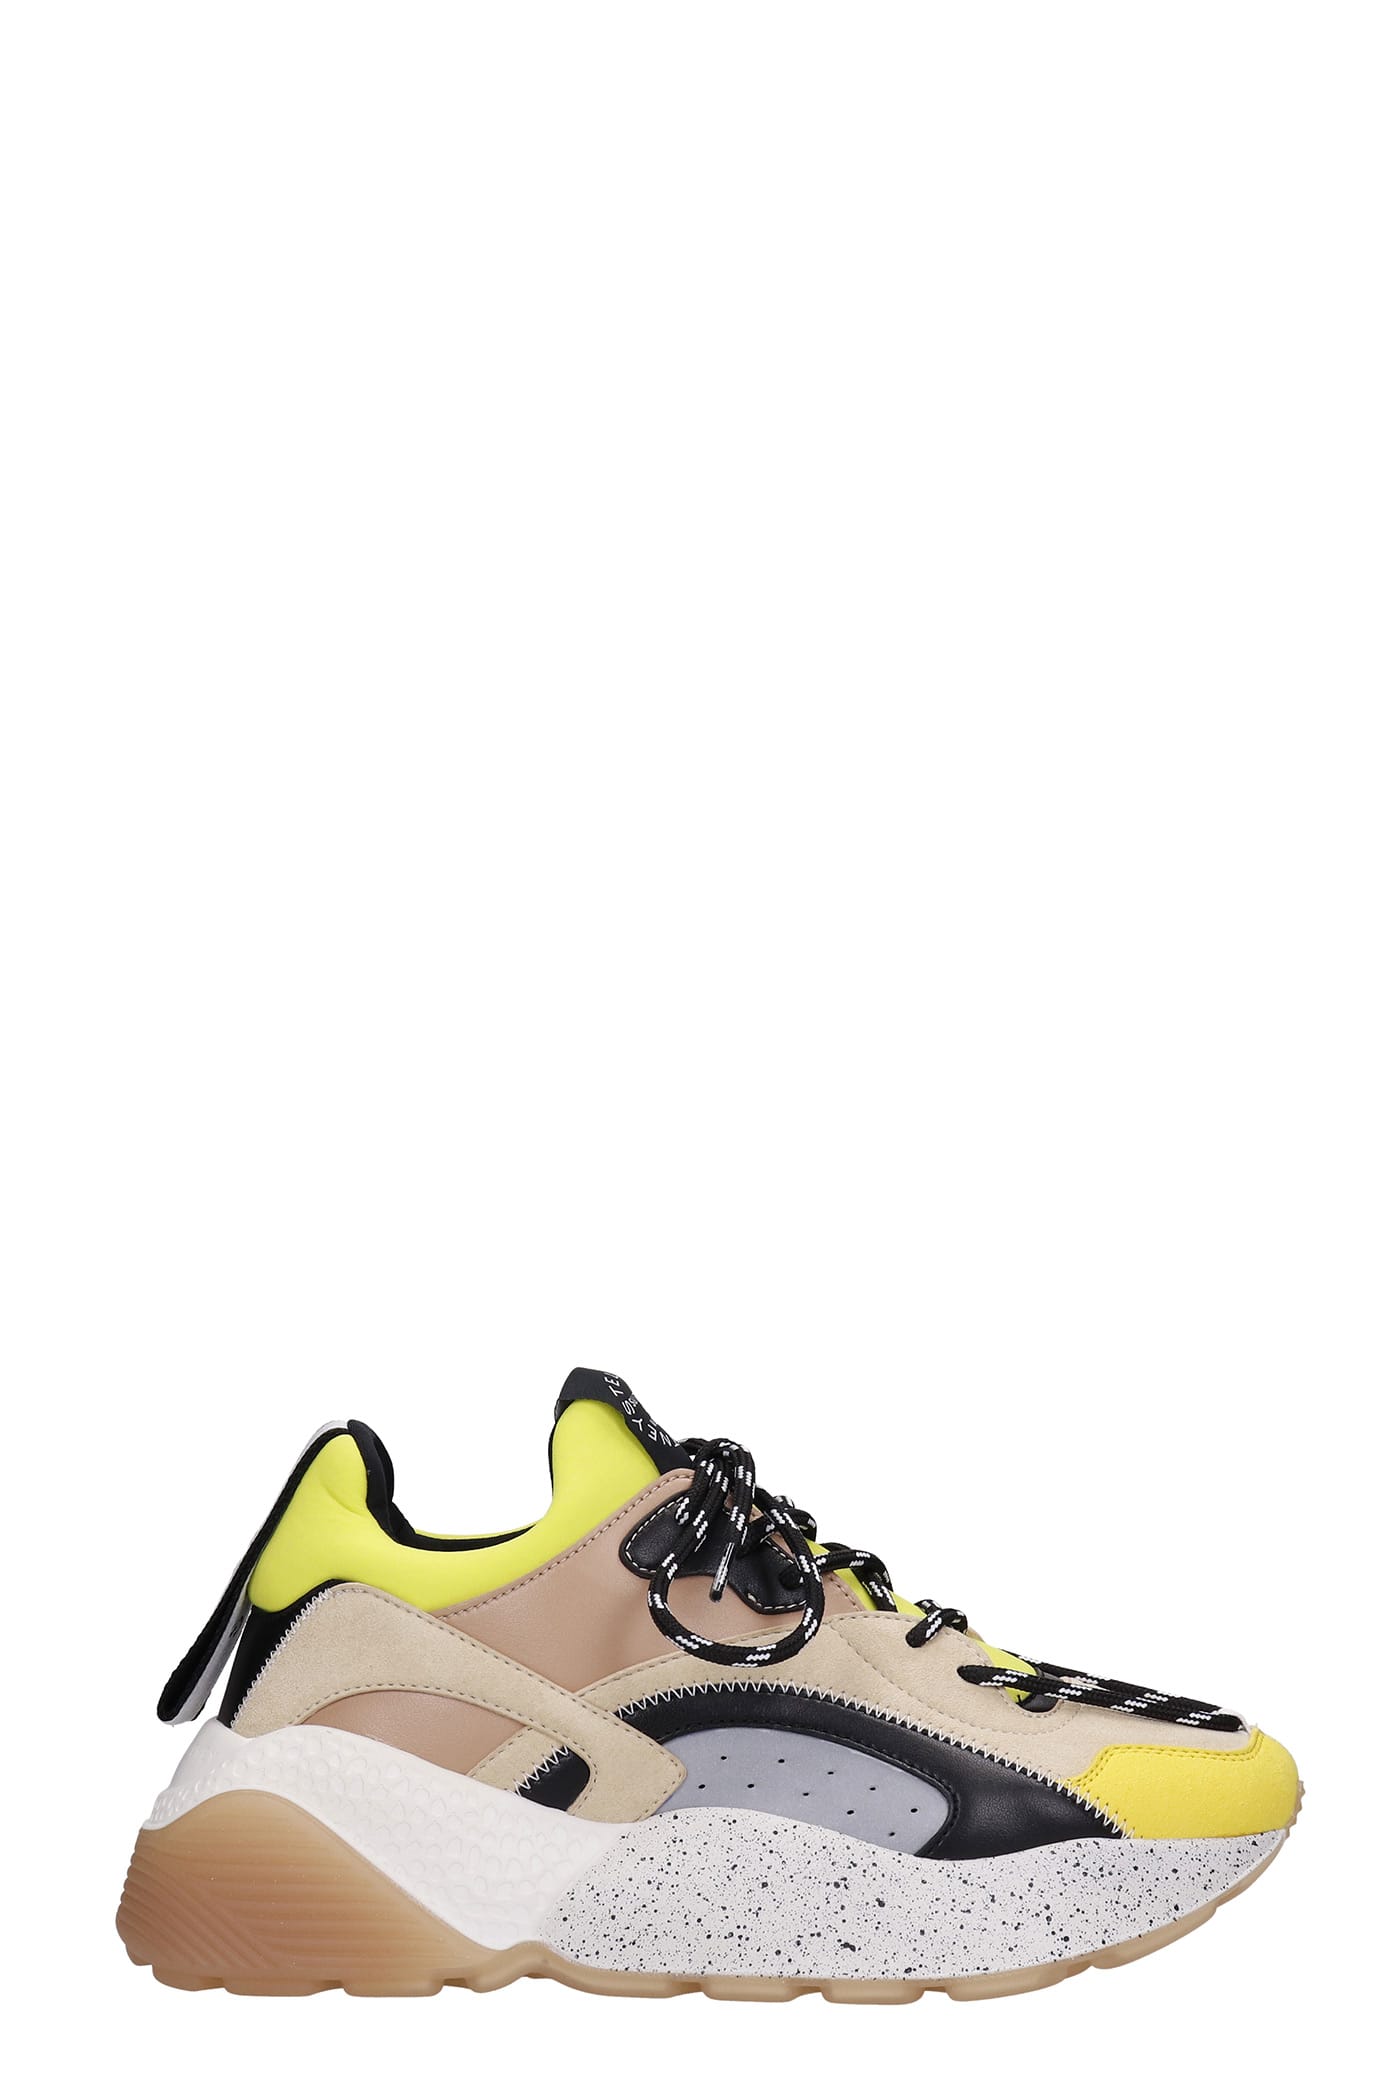 Stella McCartney Eclypse Sneakers In Yellow Synthetic Fibers